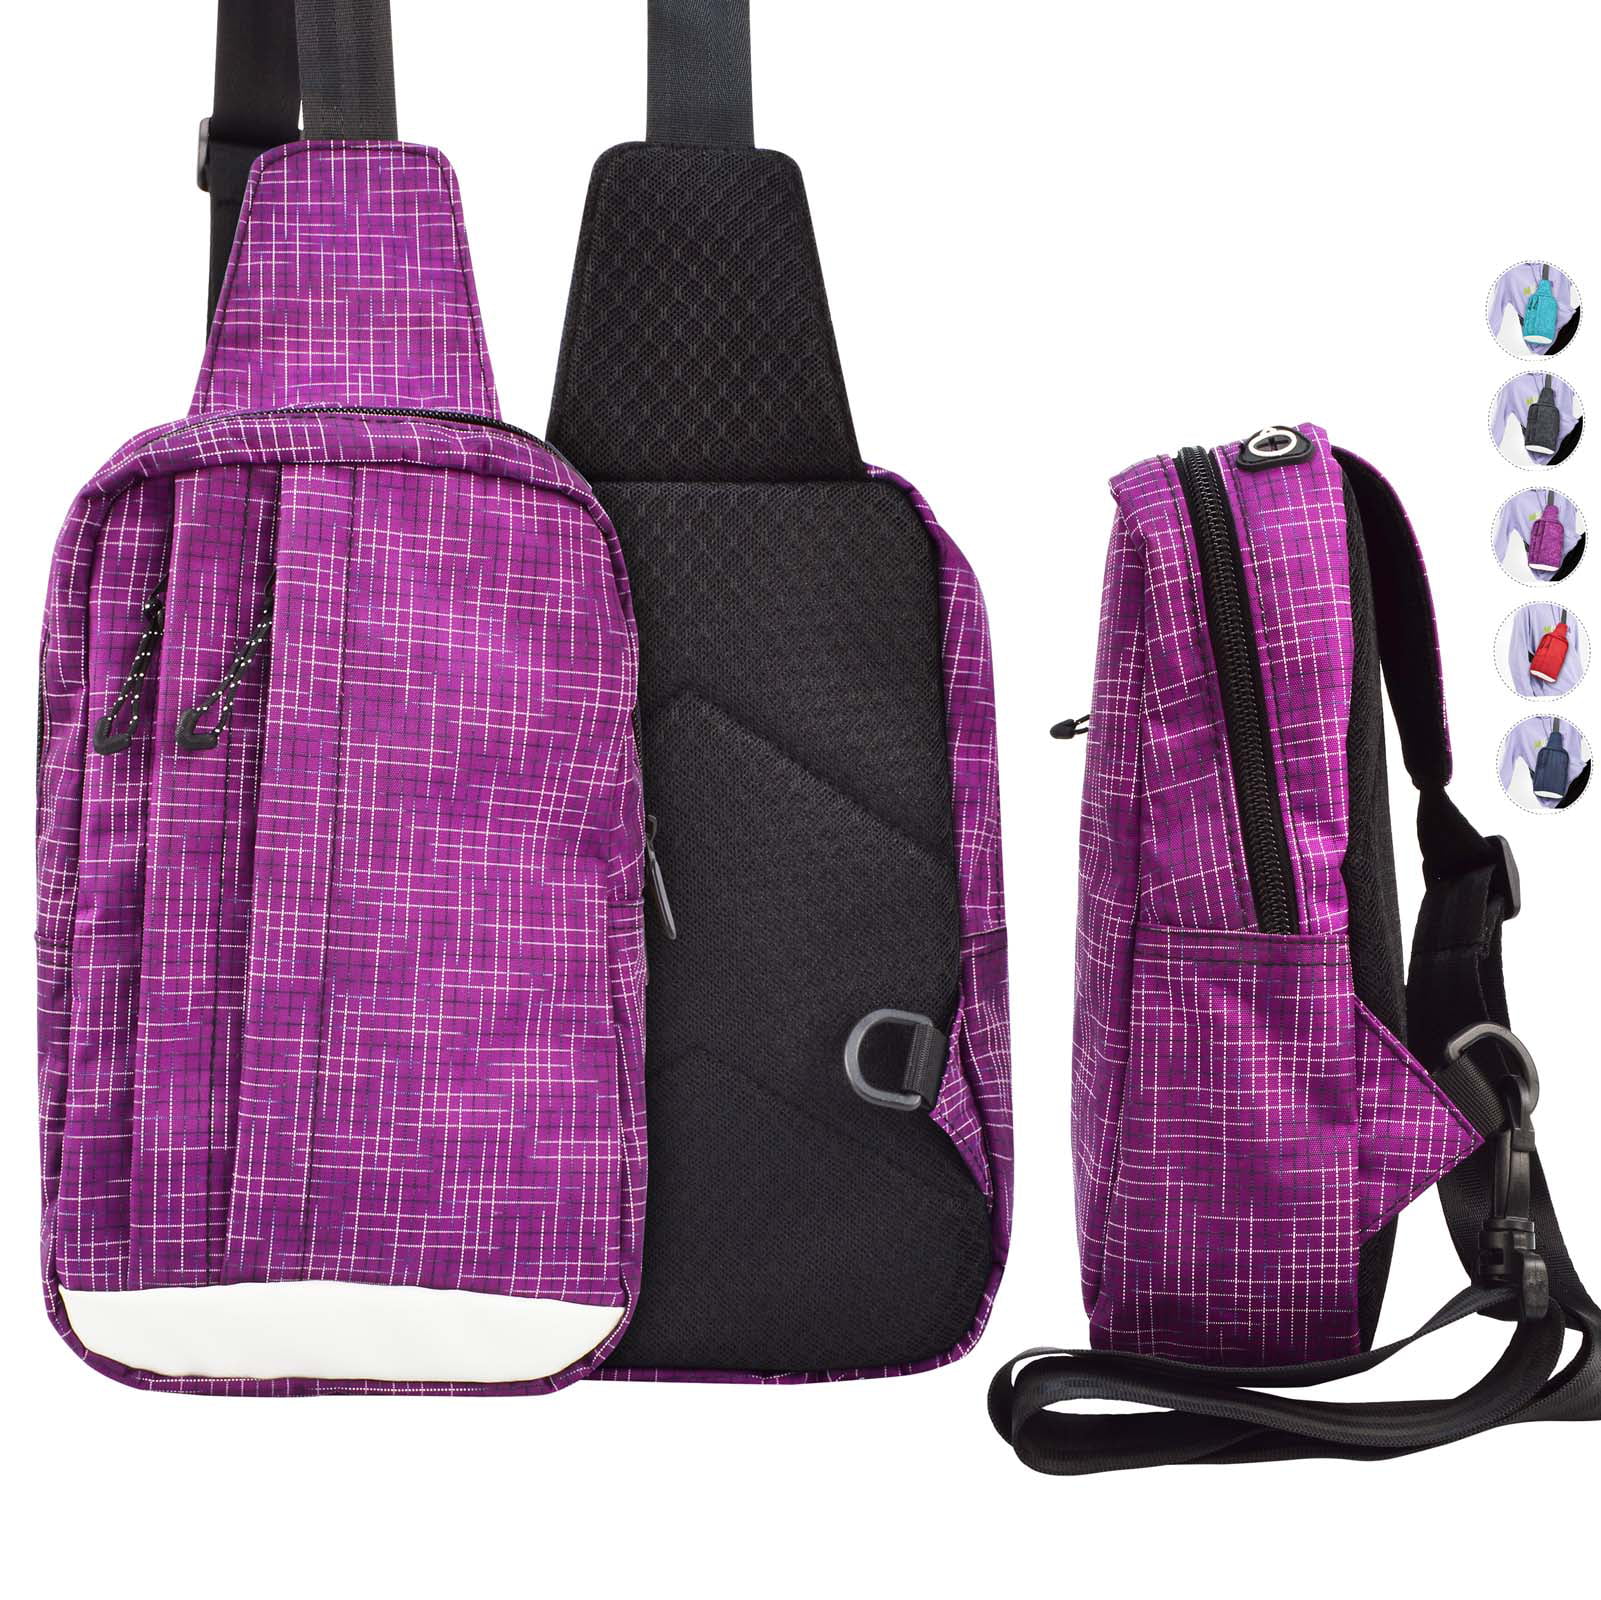 Njjex - Njjex Sling Backpack, Multipurpose Shoulder Bag Sling Chest Pack Sports Cross body ...